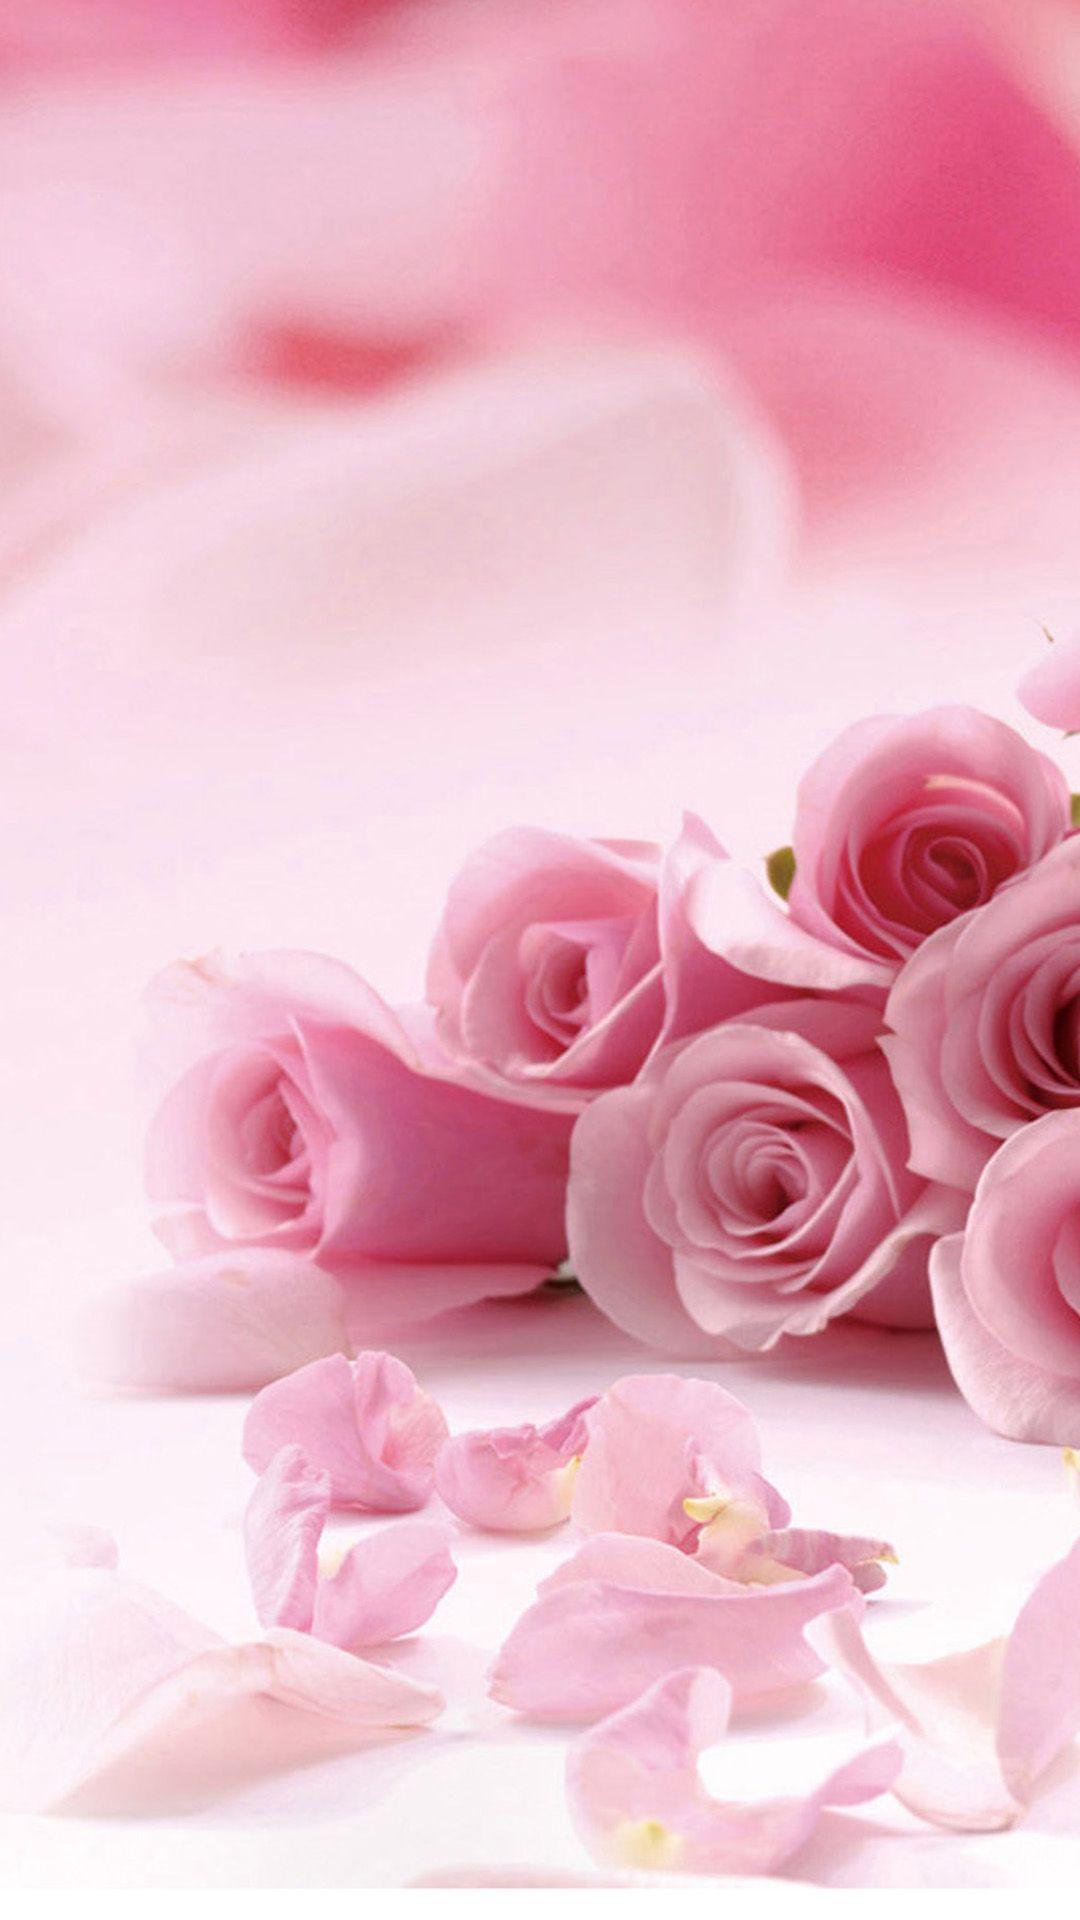 Hình nền 1080x1920 với hoa hồng và cánh hoa hồng cho iPhone - Hoa hồng